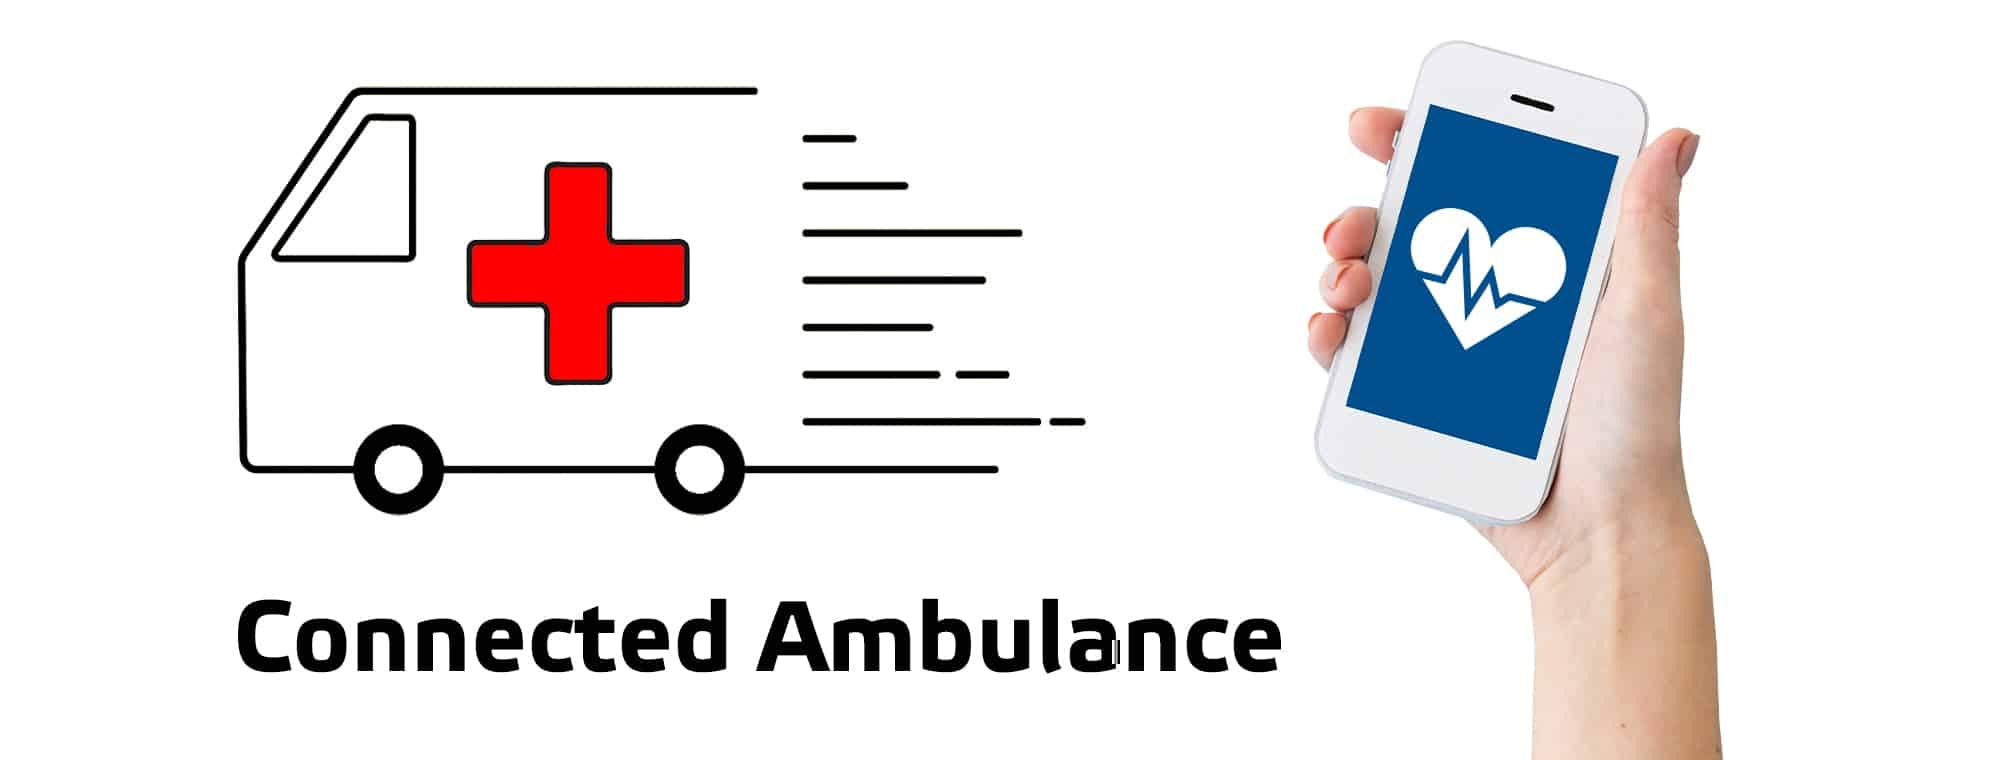 Сonnected ambulance